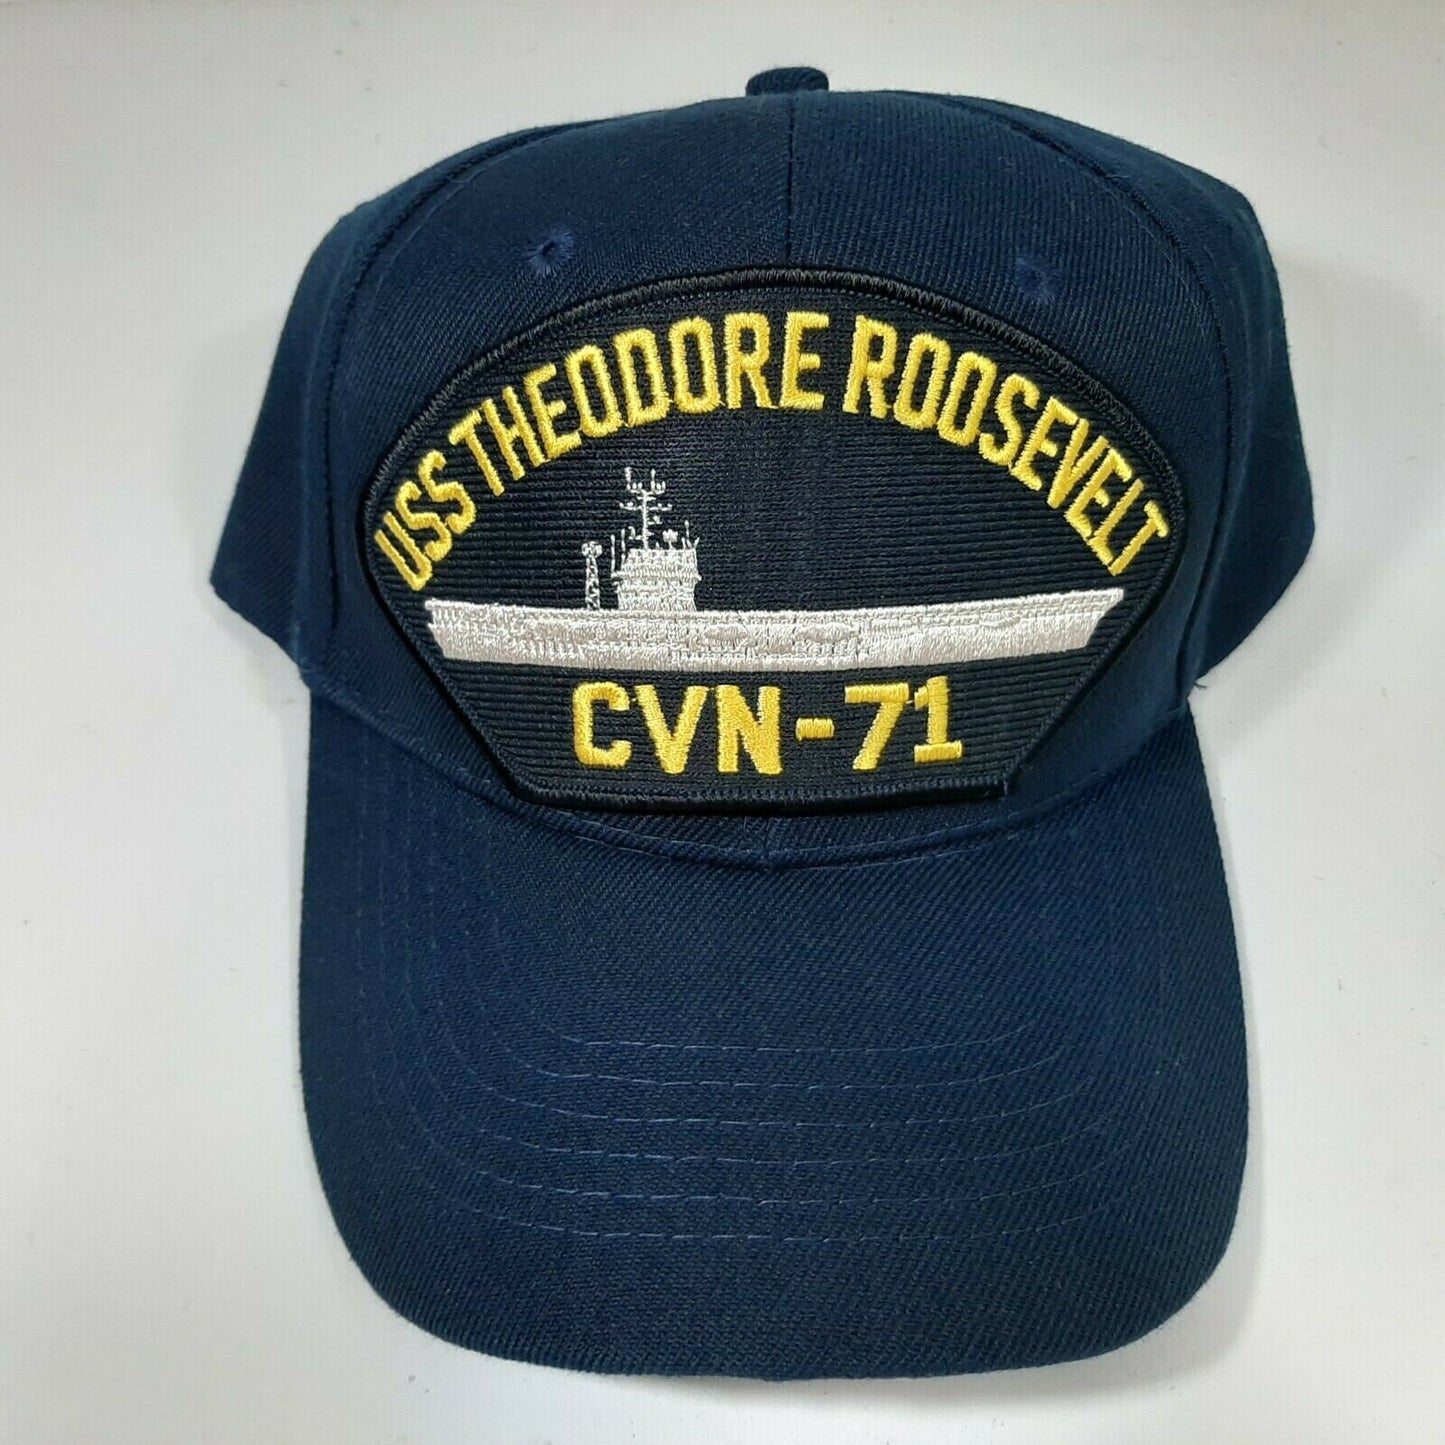 U.S. Navy USS Theodore Roosevelt CVN-71 Men's Patch Cap Hat Navy Blue Acrylic